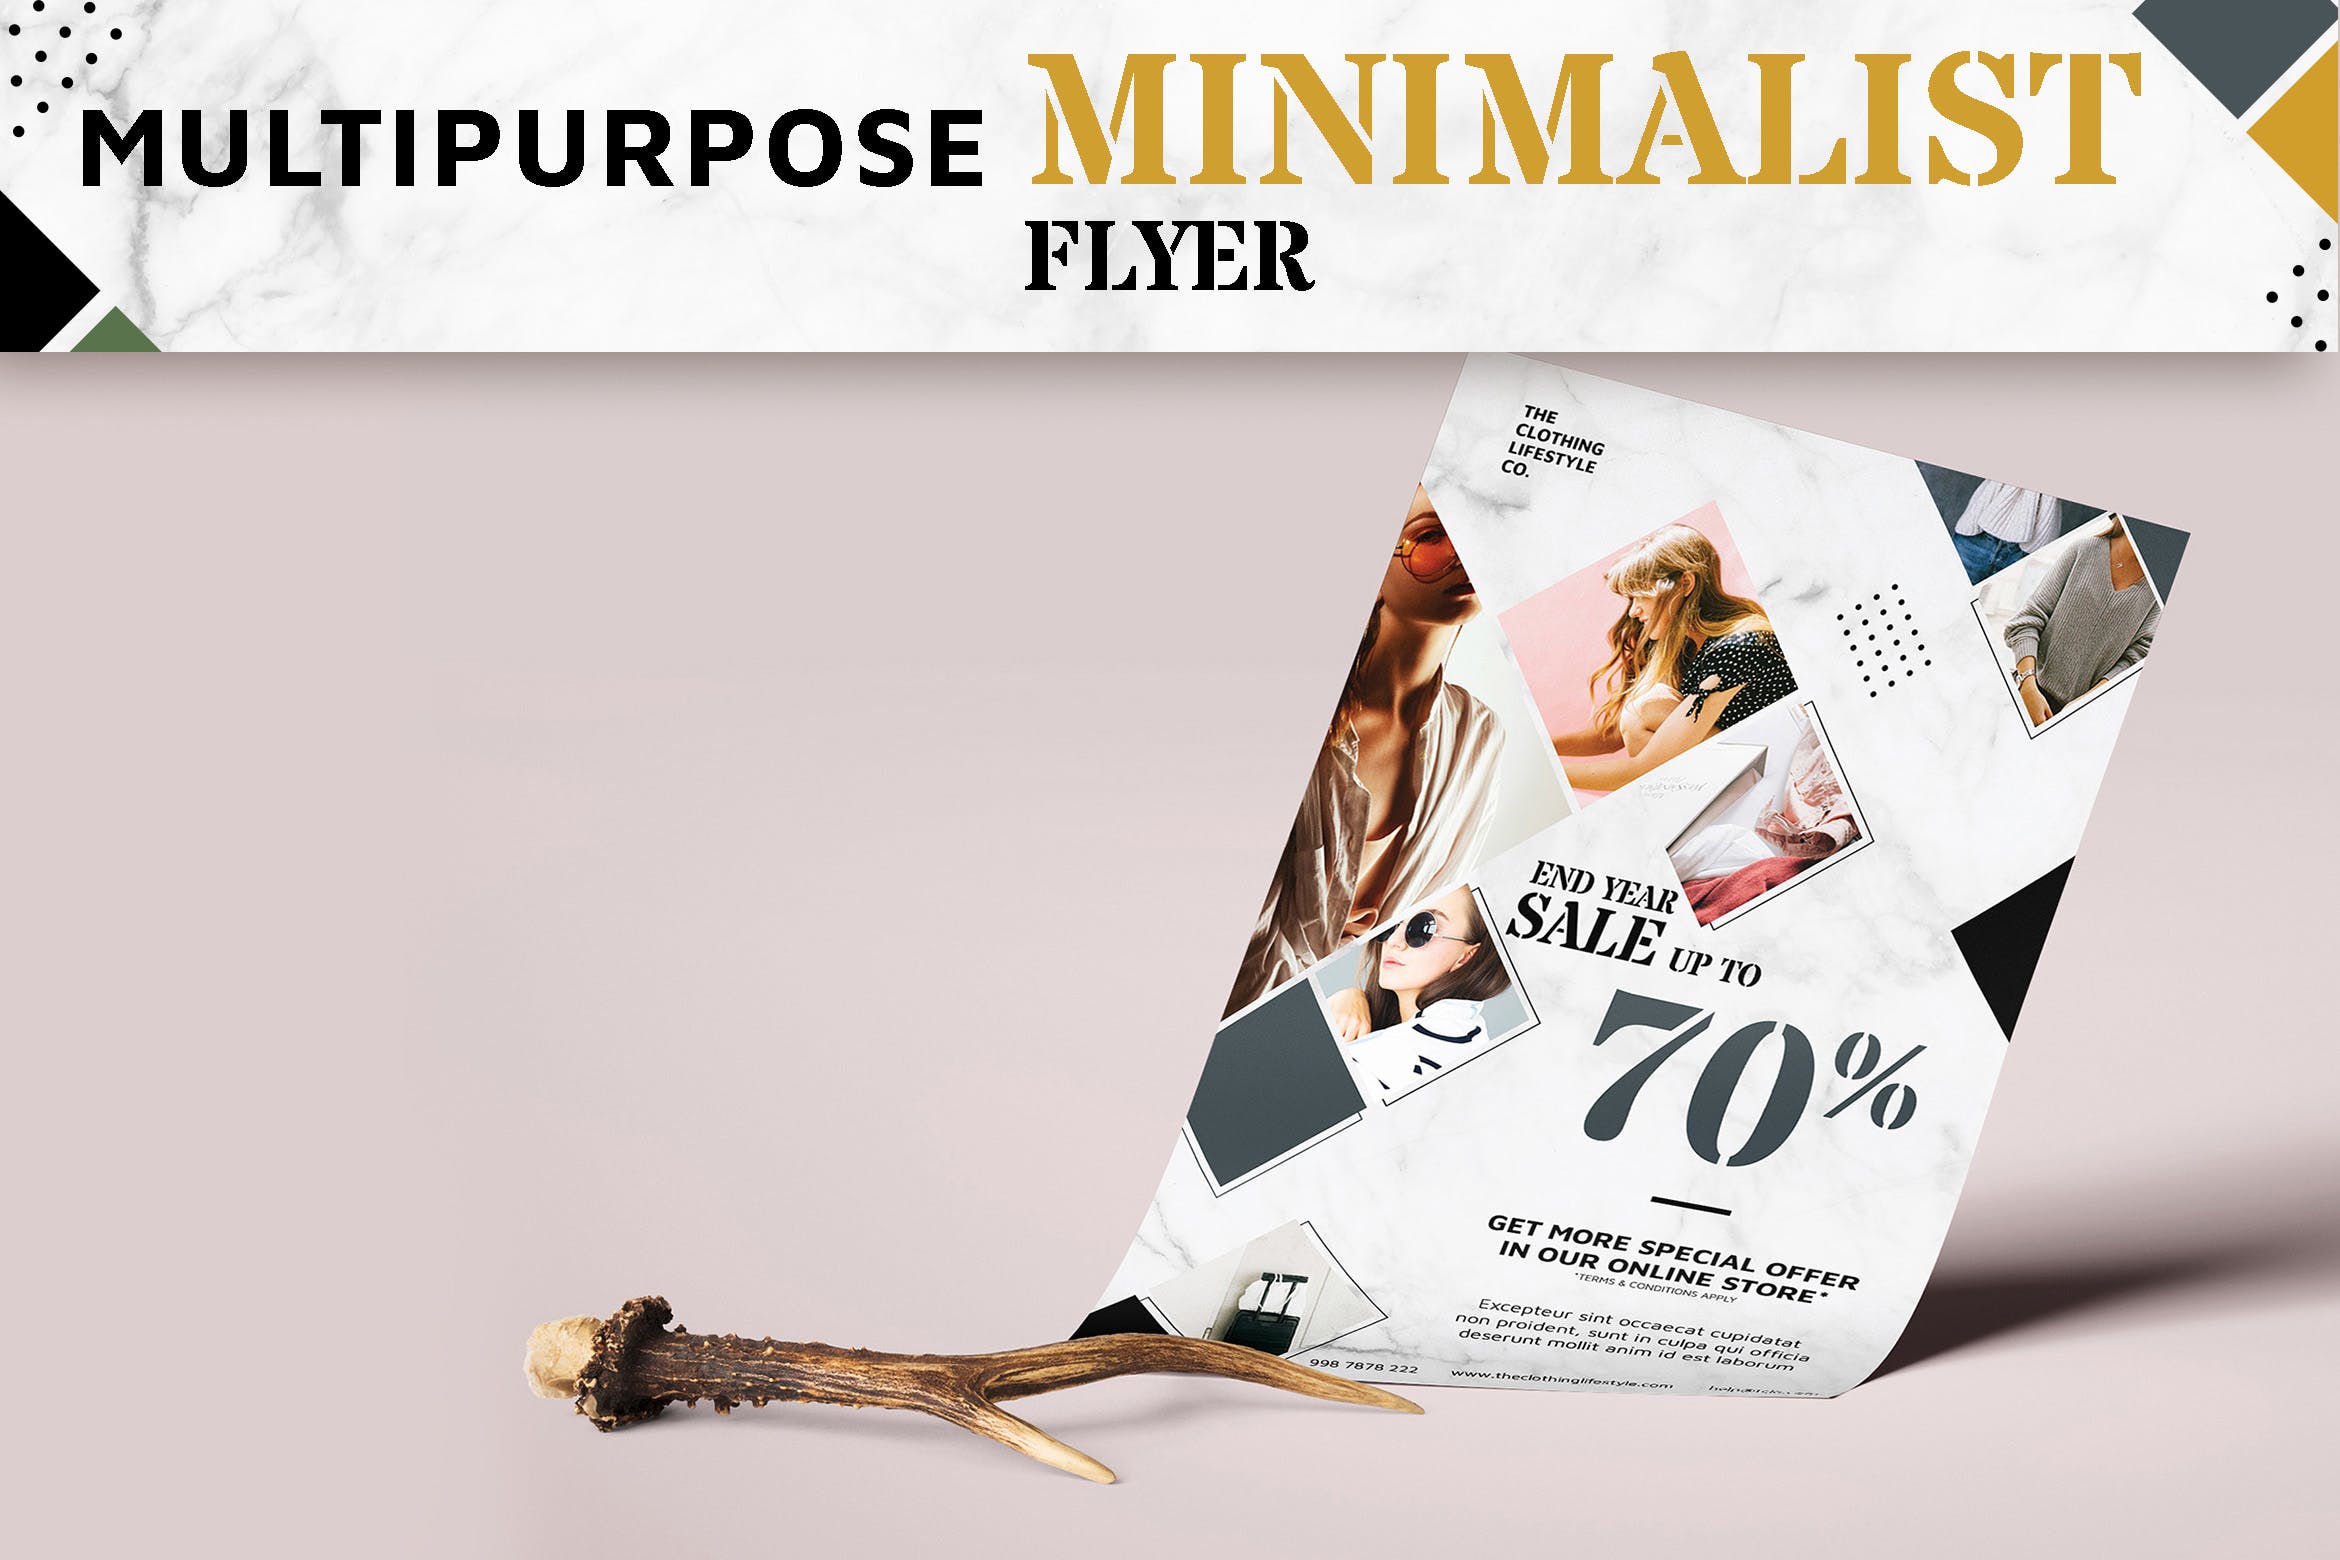 多用途极简设计风格促销传单模板 Multipurpose Minimalist Flyer插图